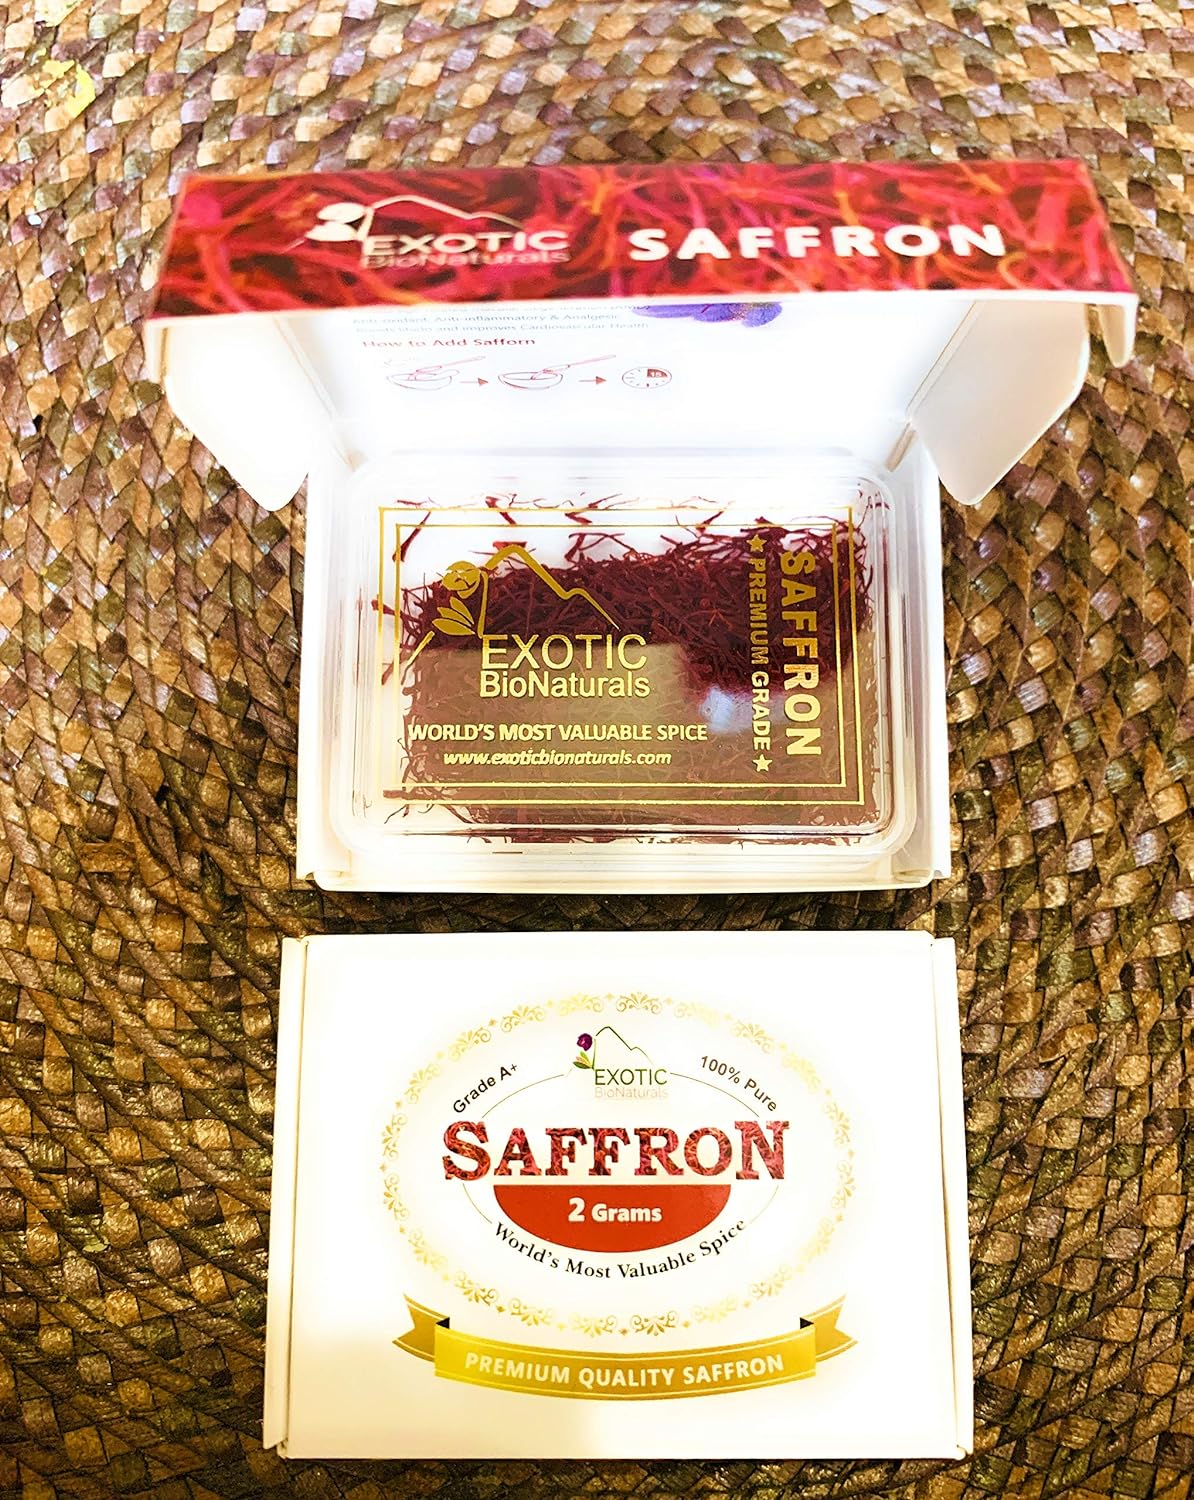  EXOTIC BioNaturals SAFFRON, All Red Super Negin Grade A+ Premium Quality Spice for Paella, Risotto, Persian Tea, Persian Rice and Golden Milk - (2 Grams)